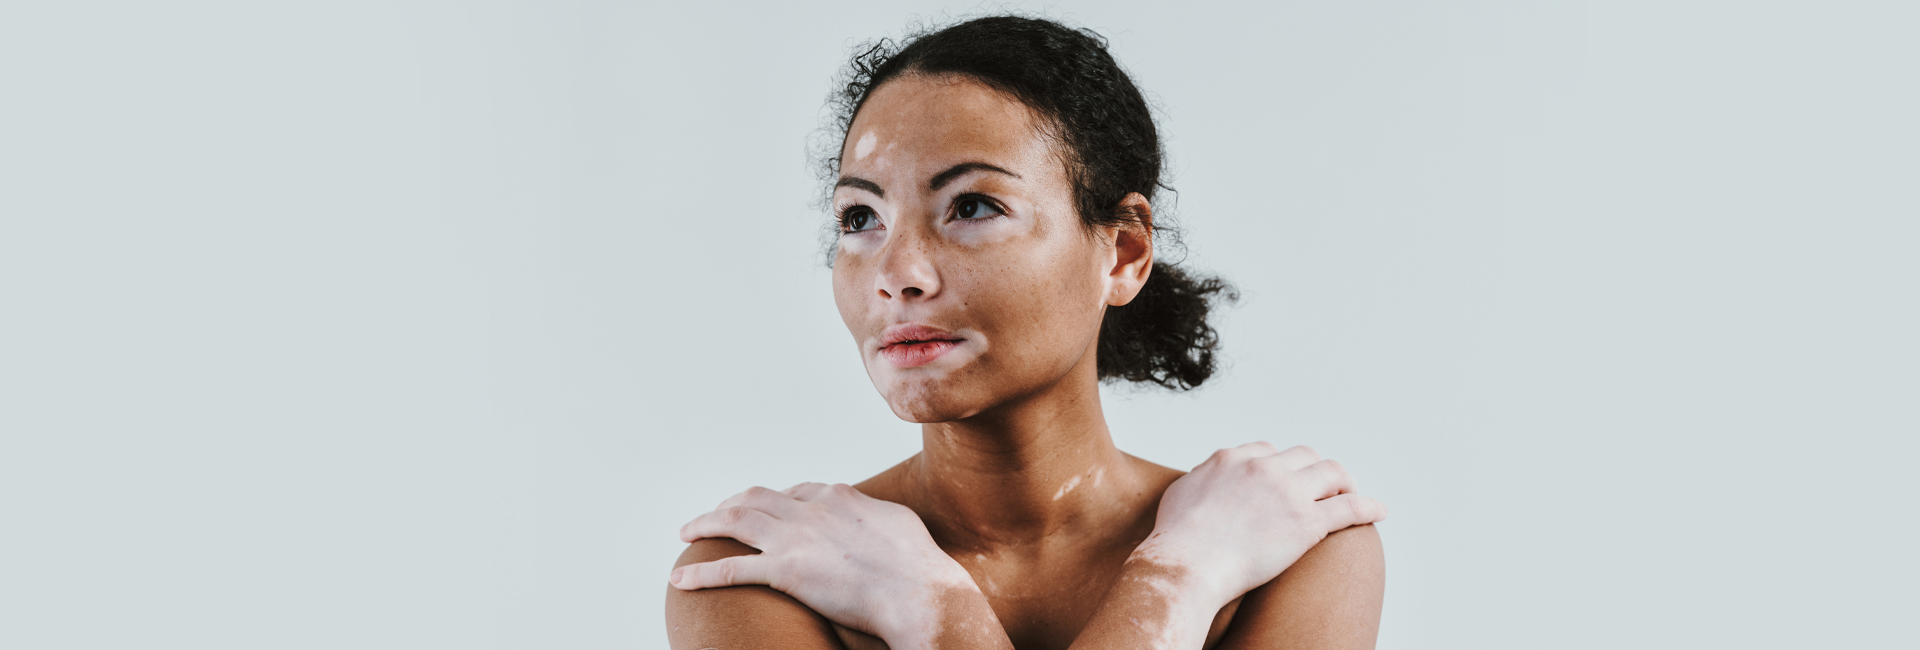 The diagnosis and treatment of vitiligo